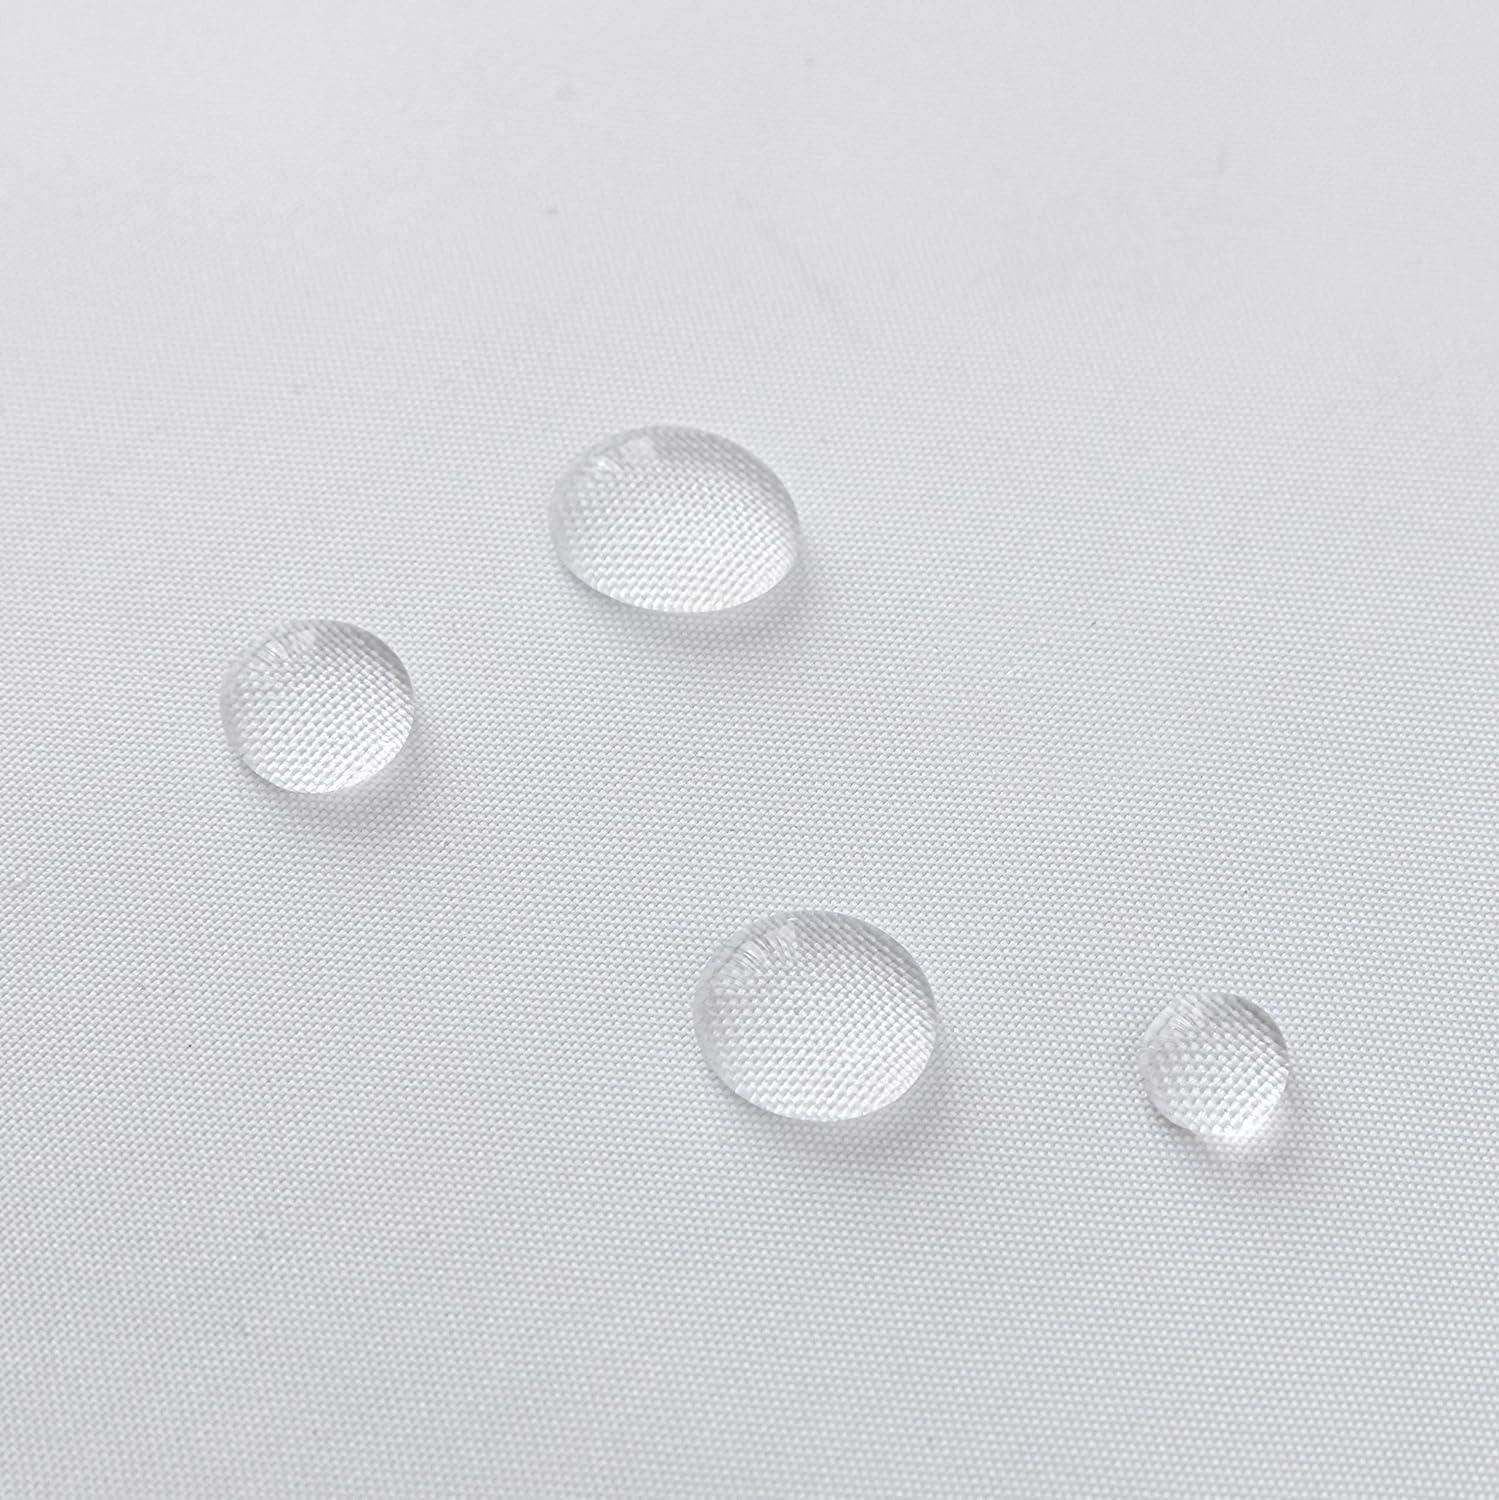 Cortinas de ducha de tela de calidad de hotel resistentes al agua ojal -  VIRTUAL MUEBLES